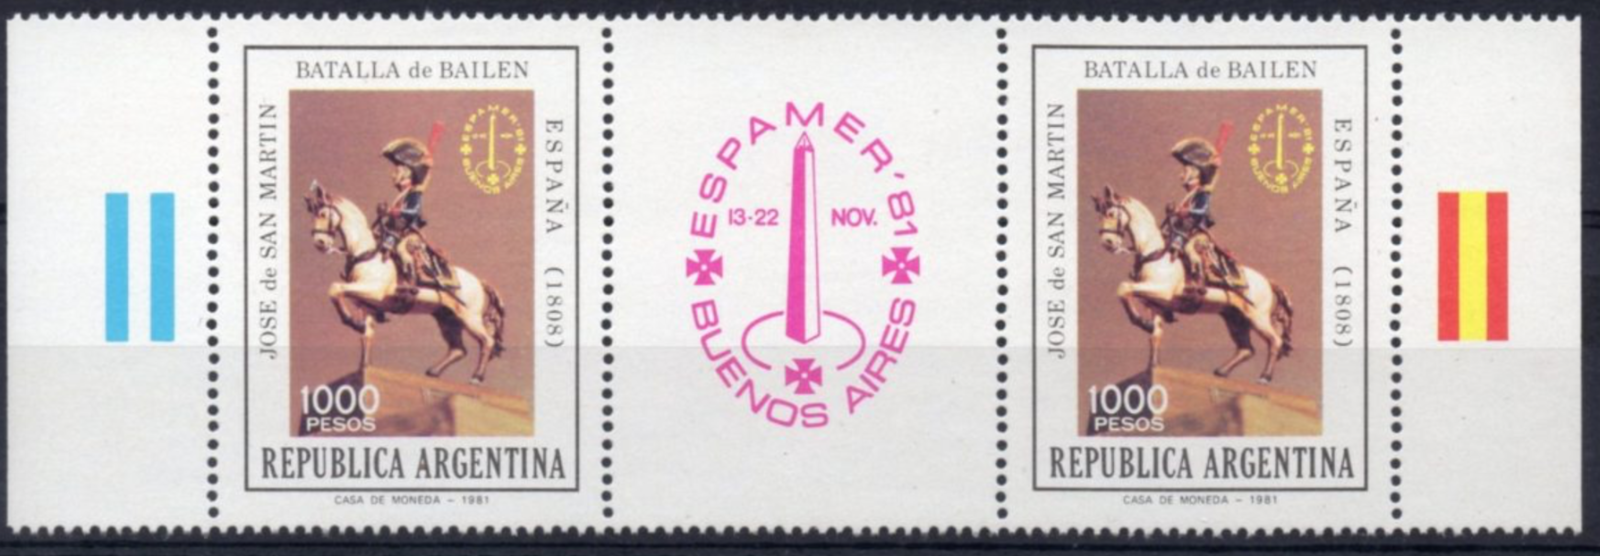 Argentina - Scott #1322 (1981) pair with label